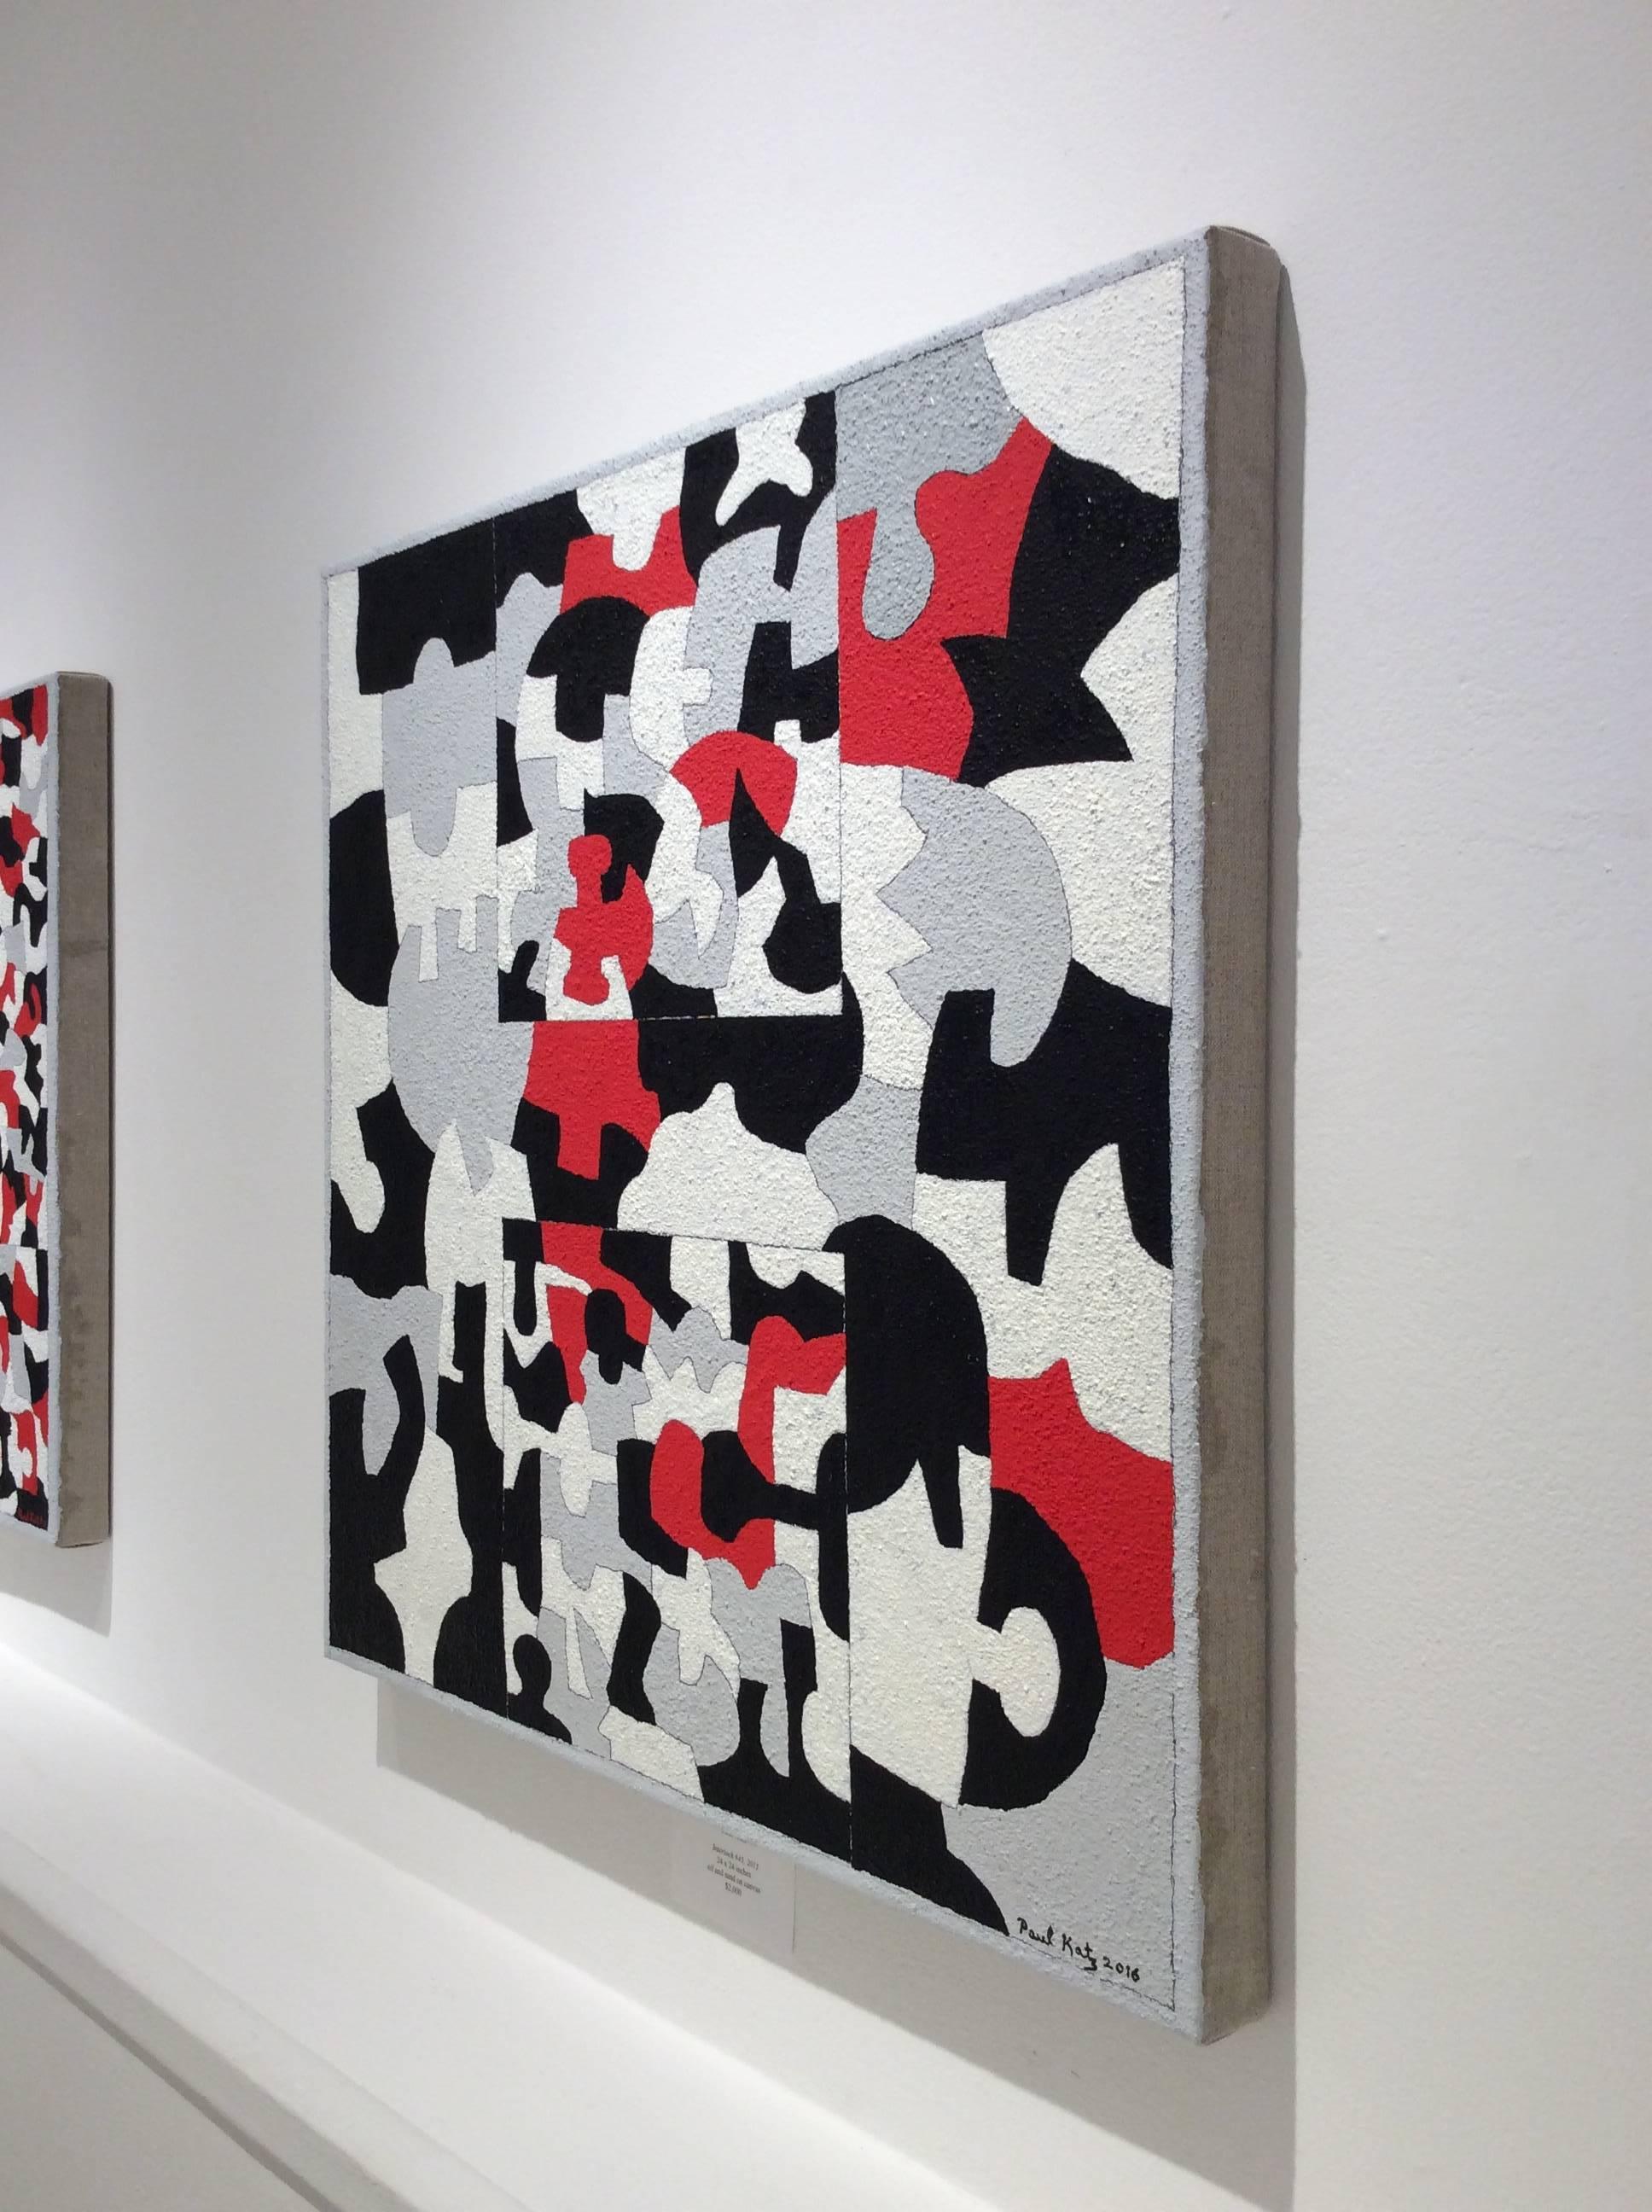 Interlock n°45 (peinture grise, abstraite, rouge, grise, blanche et noire sur toile) - Painting de Paul Katz